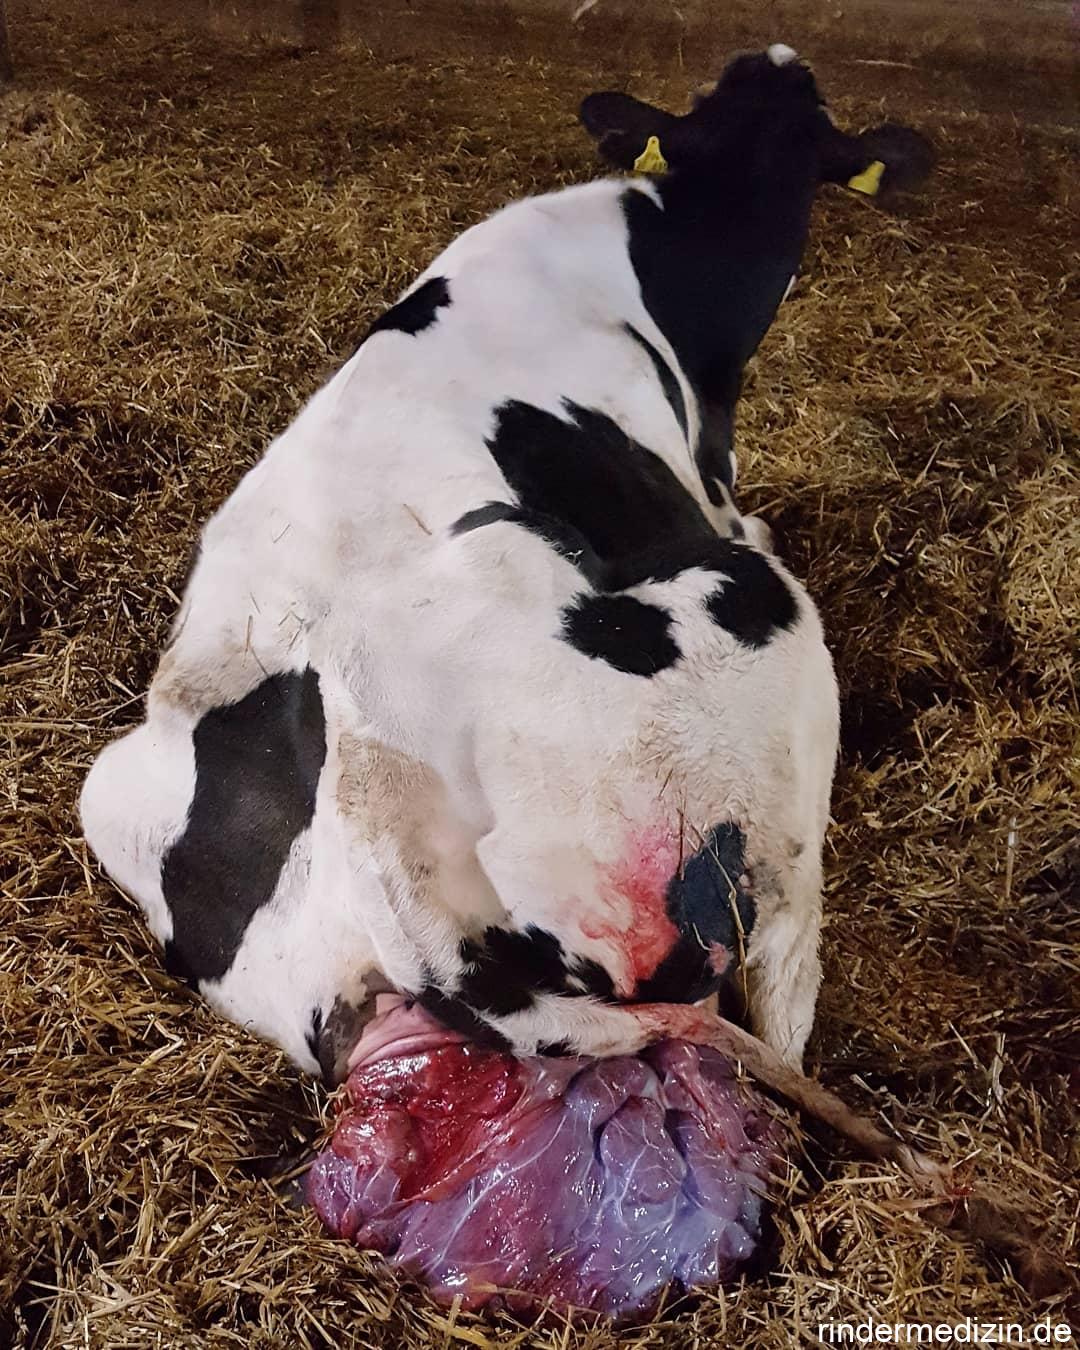 Gebährmuttervorfall bei der Kuh